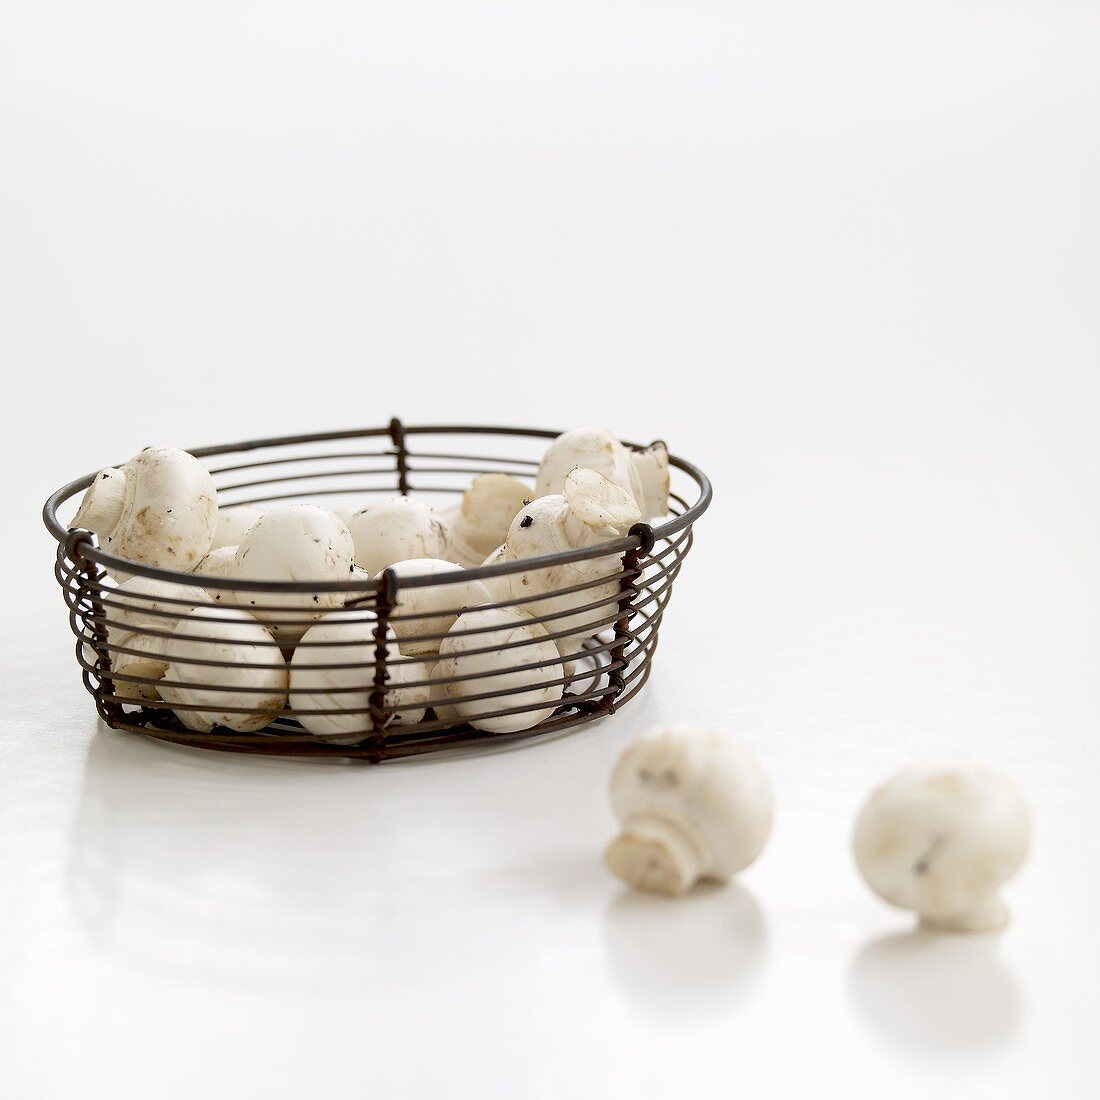 Fresh button mushrooms in wire basket